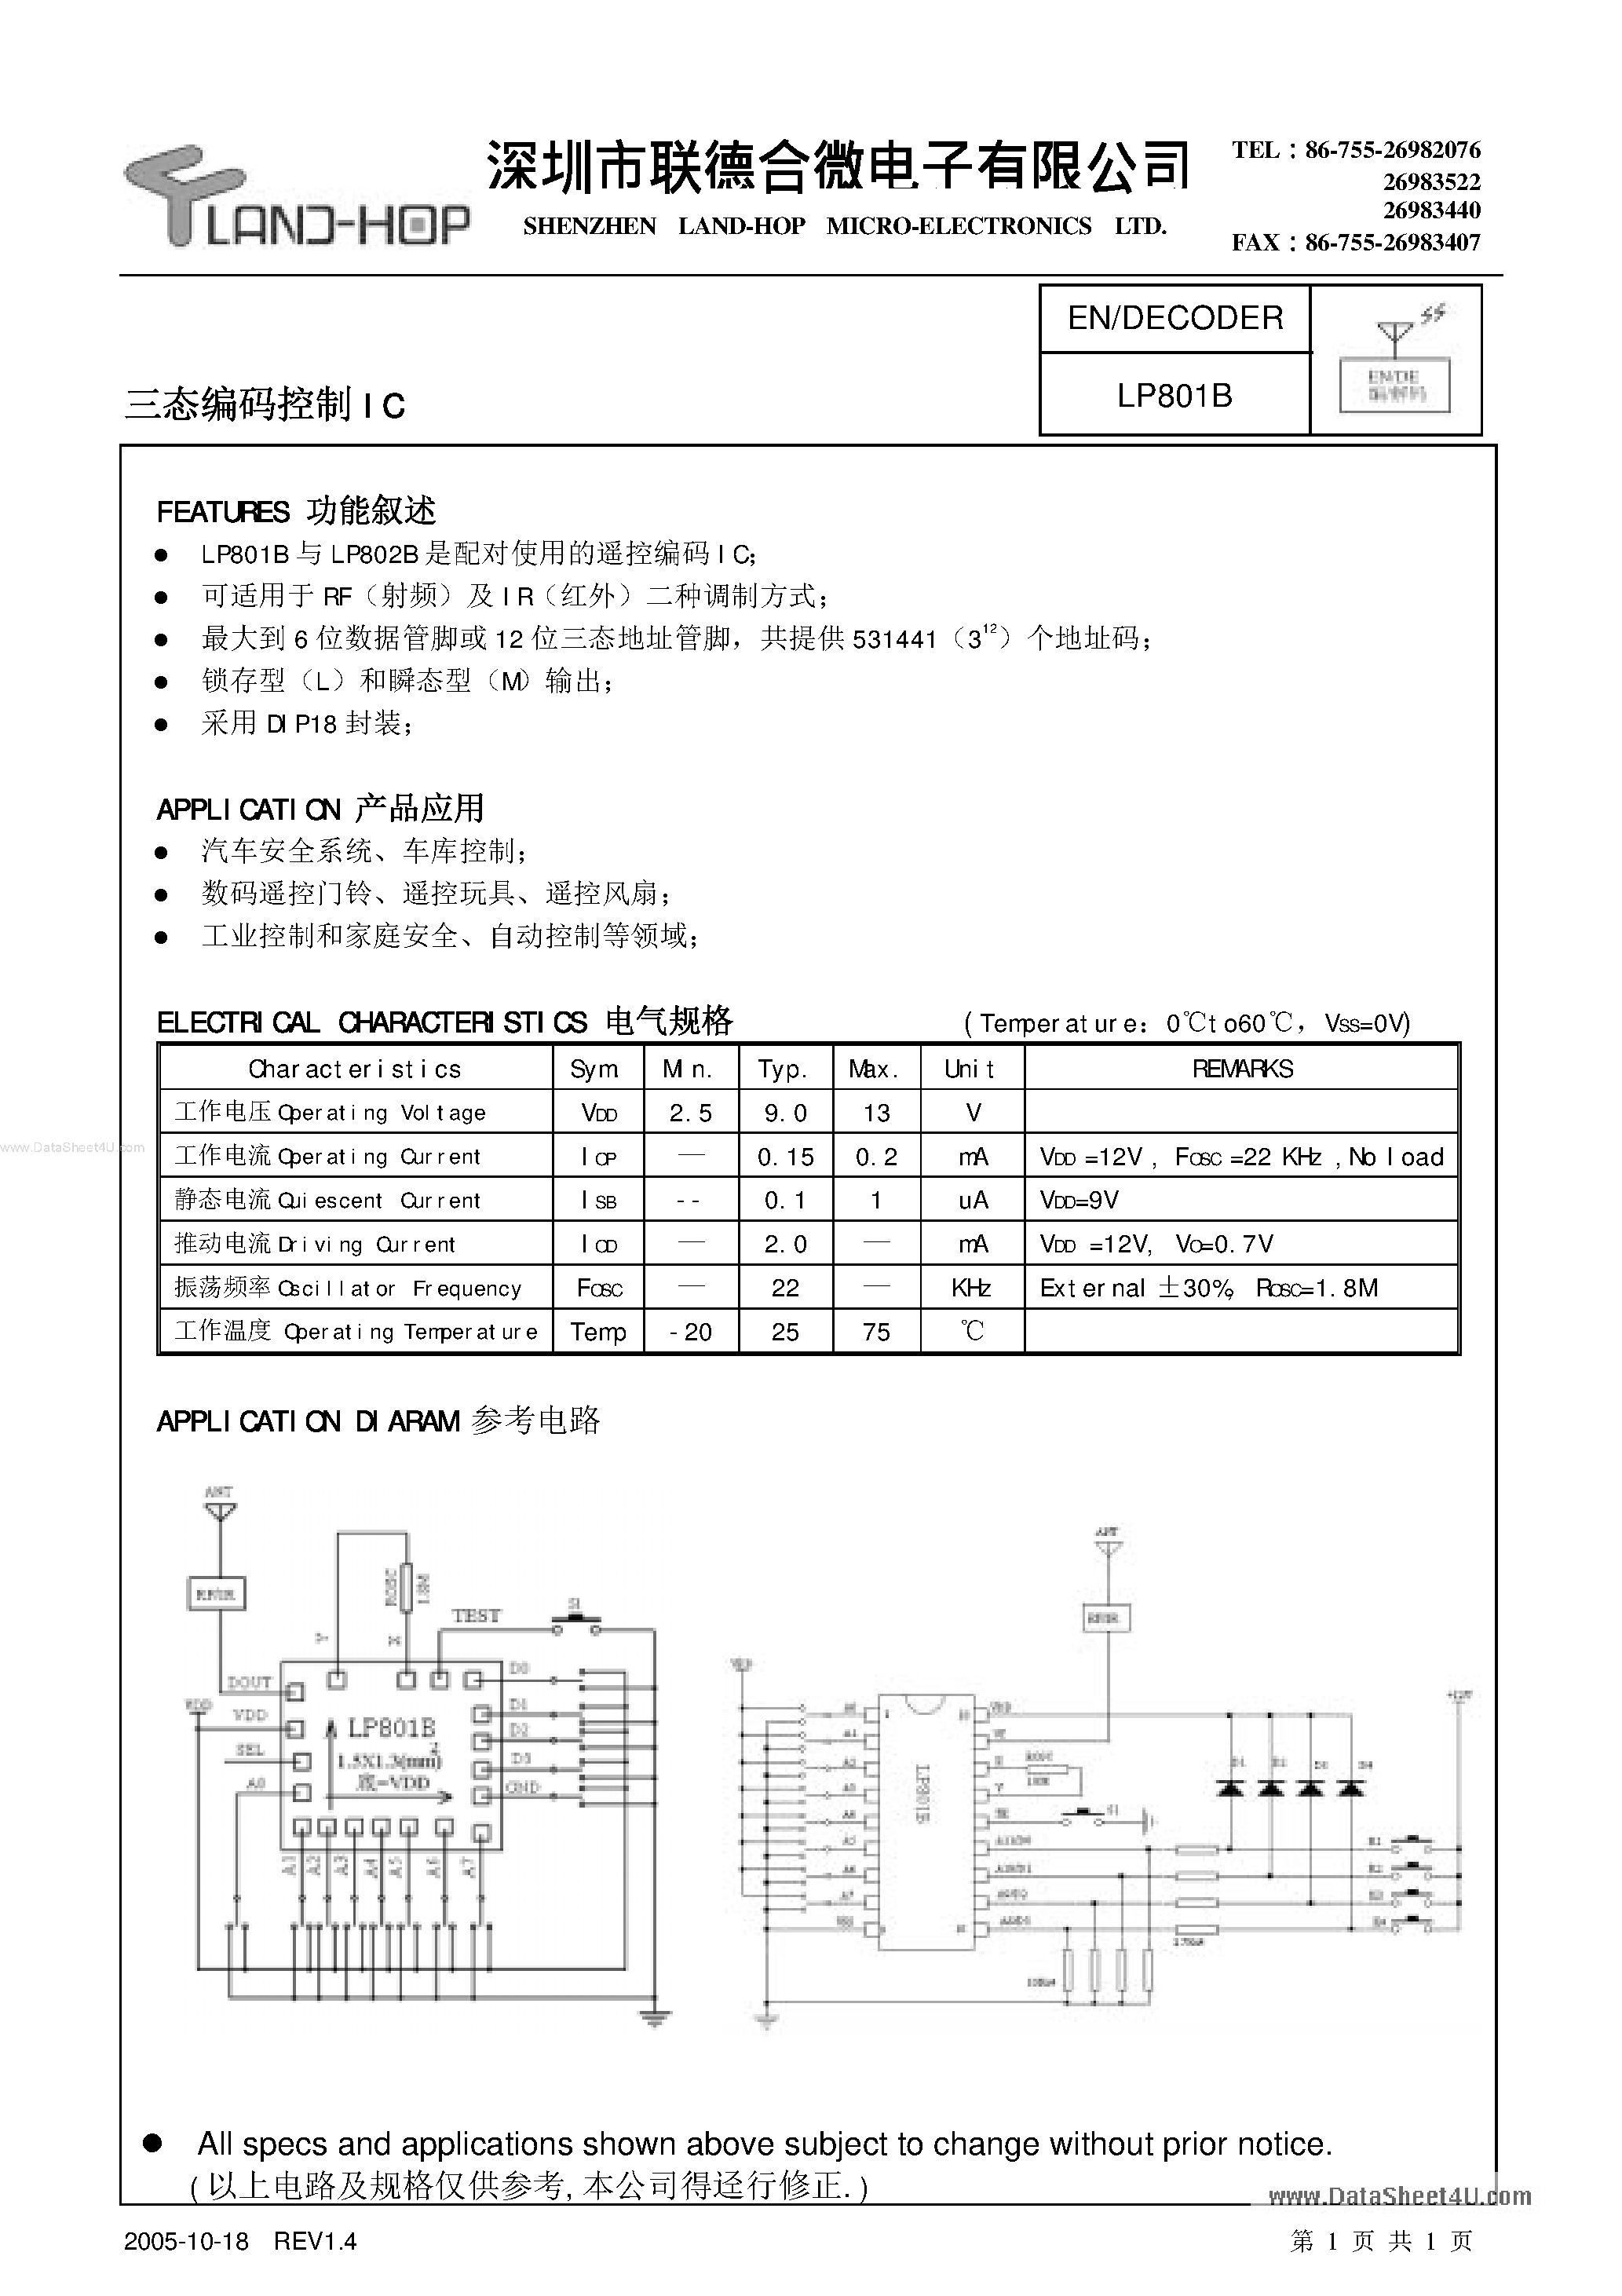 Datasheet LP801B - Encoder / Decoder page 1